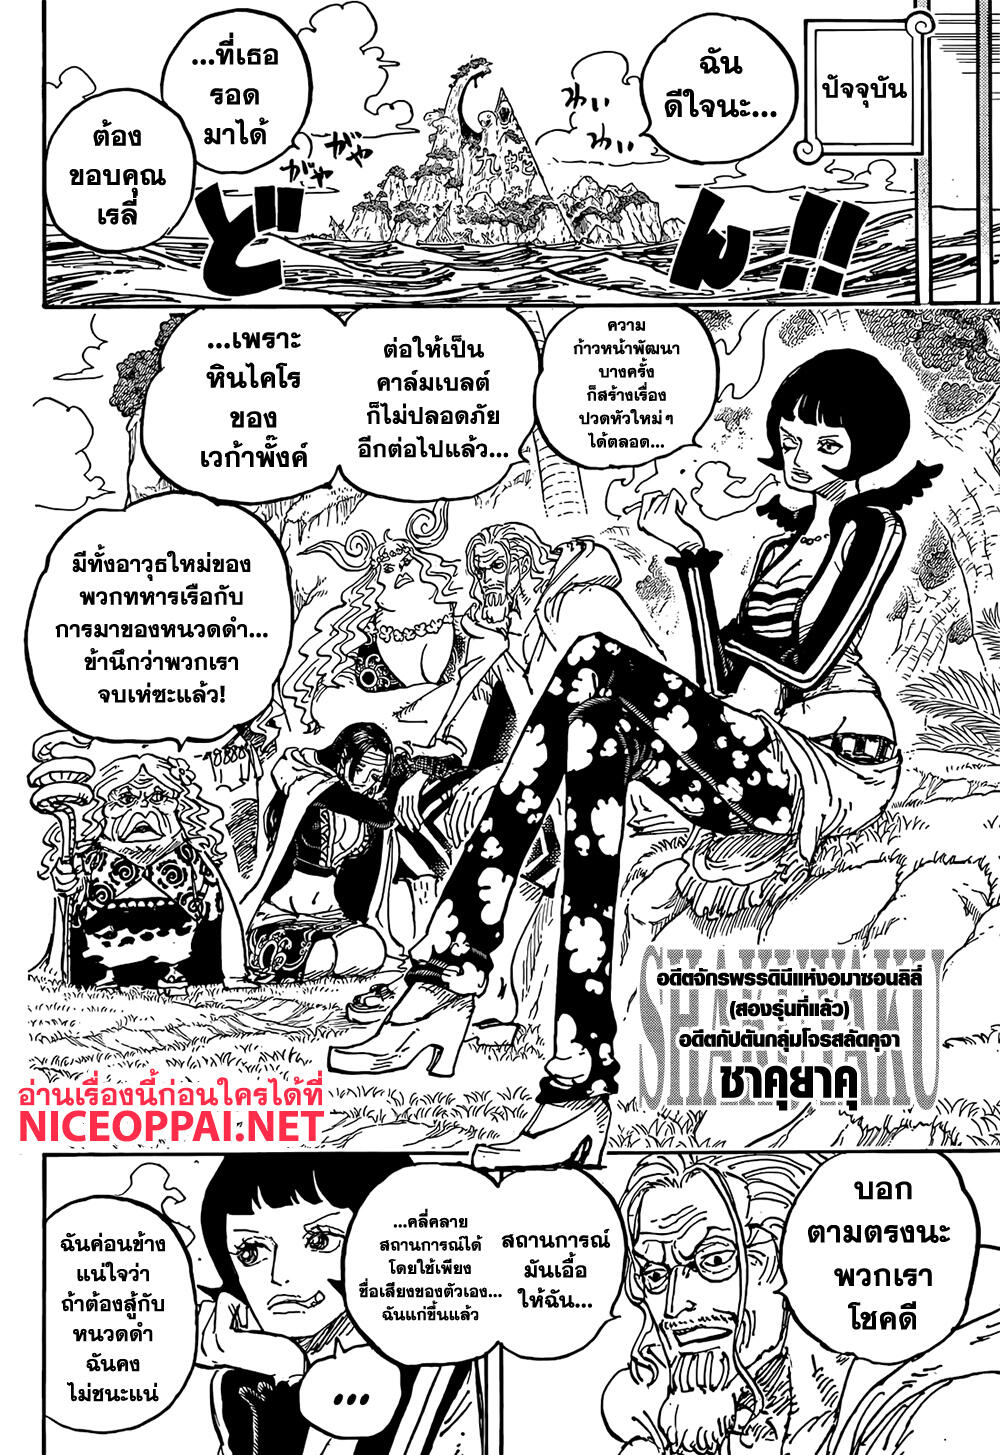 One Piece 1059-คดีนาวาเอกโคบี้